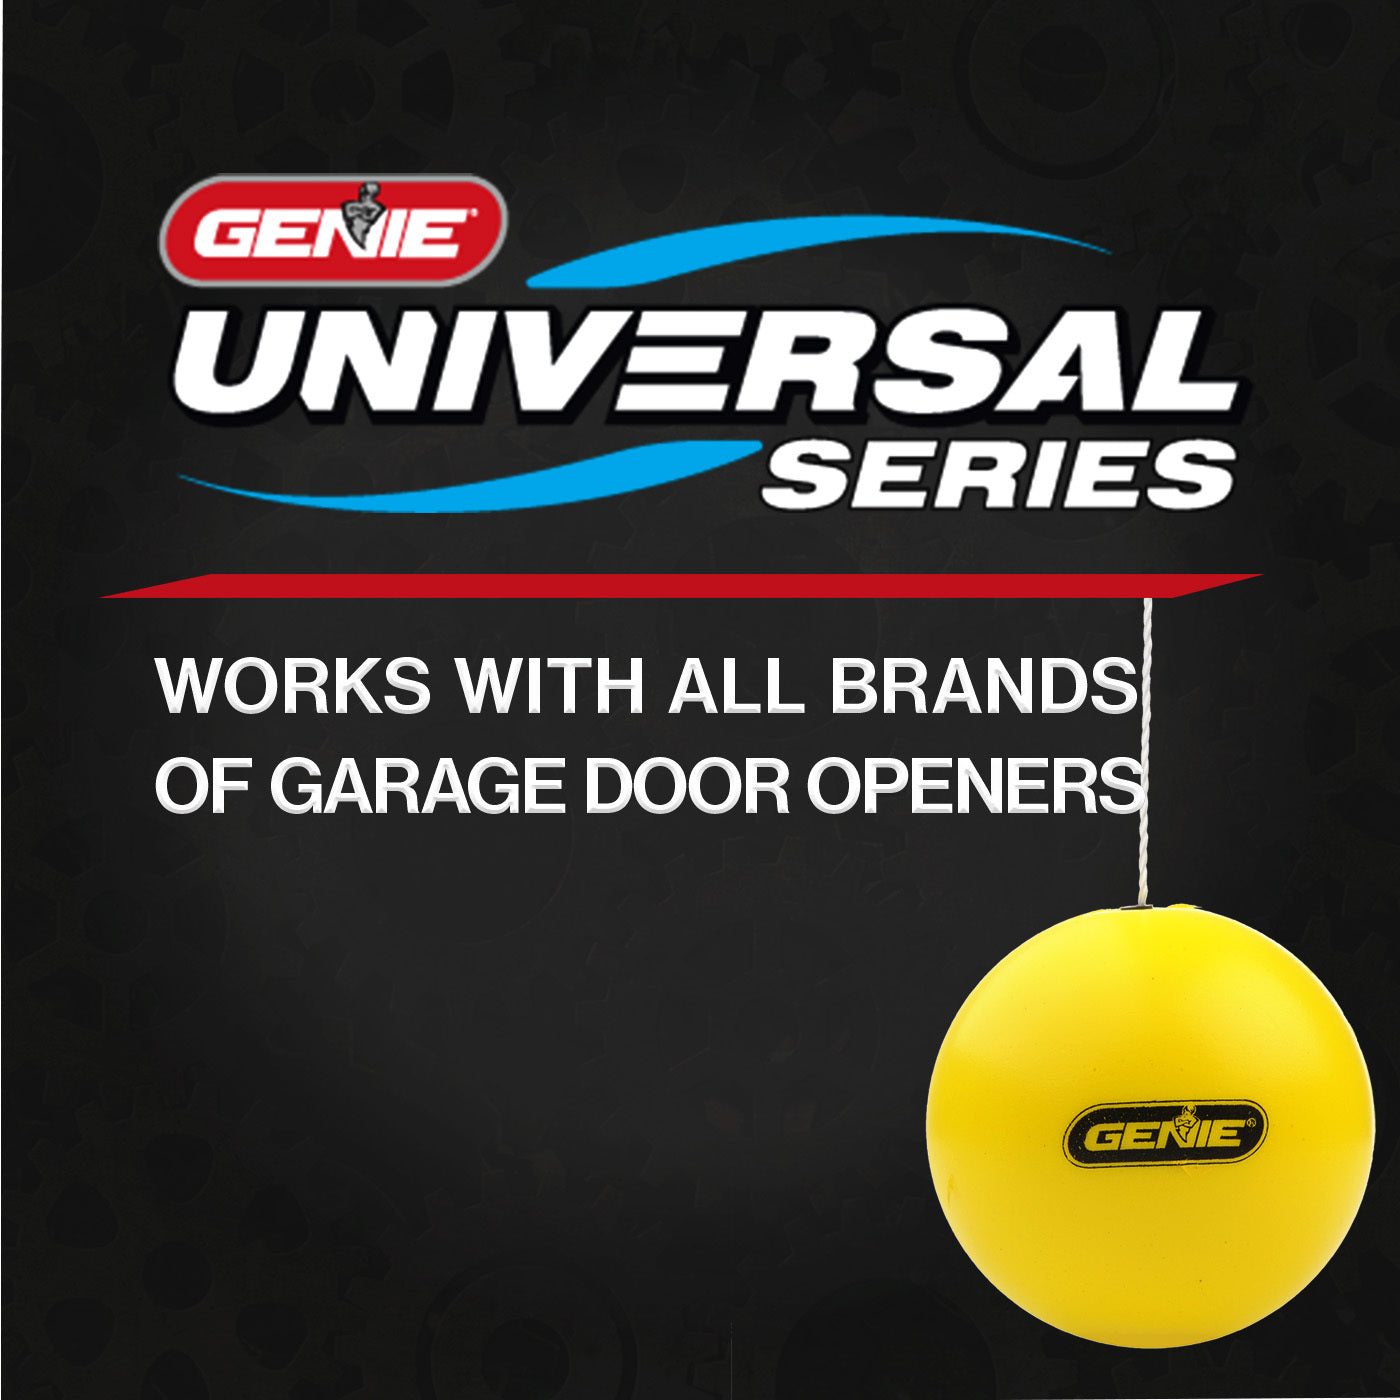 Genie Universal Series Works with all brands of garage door openers